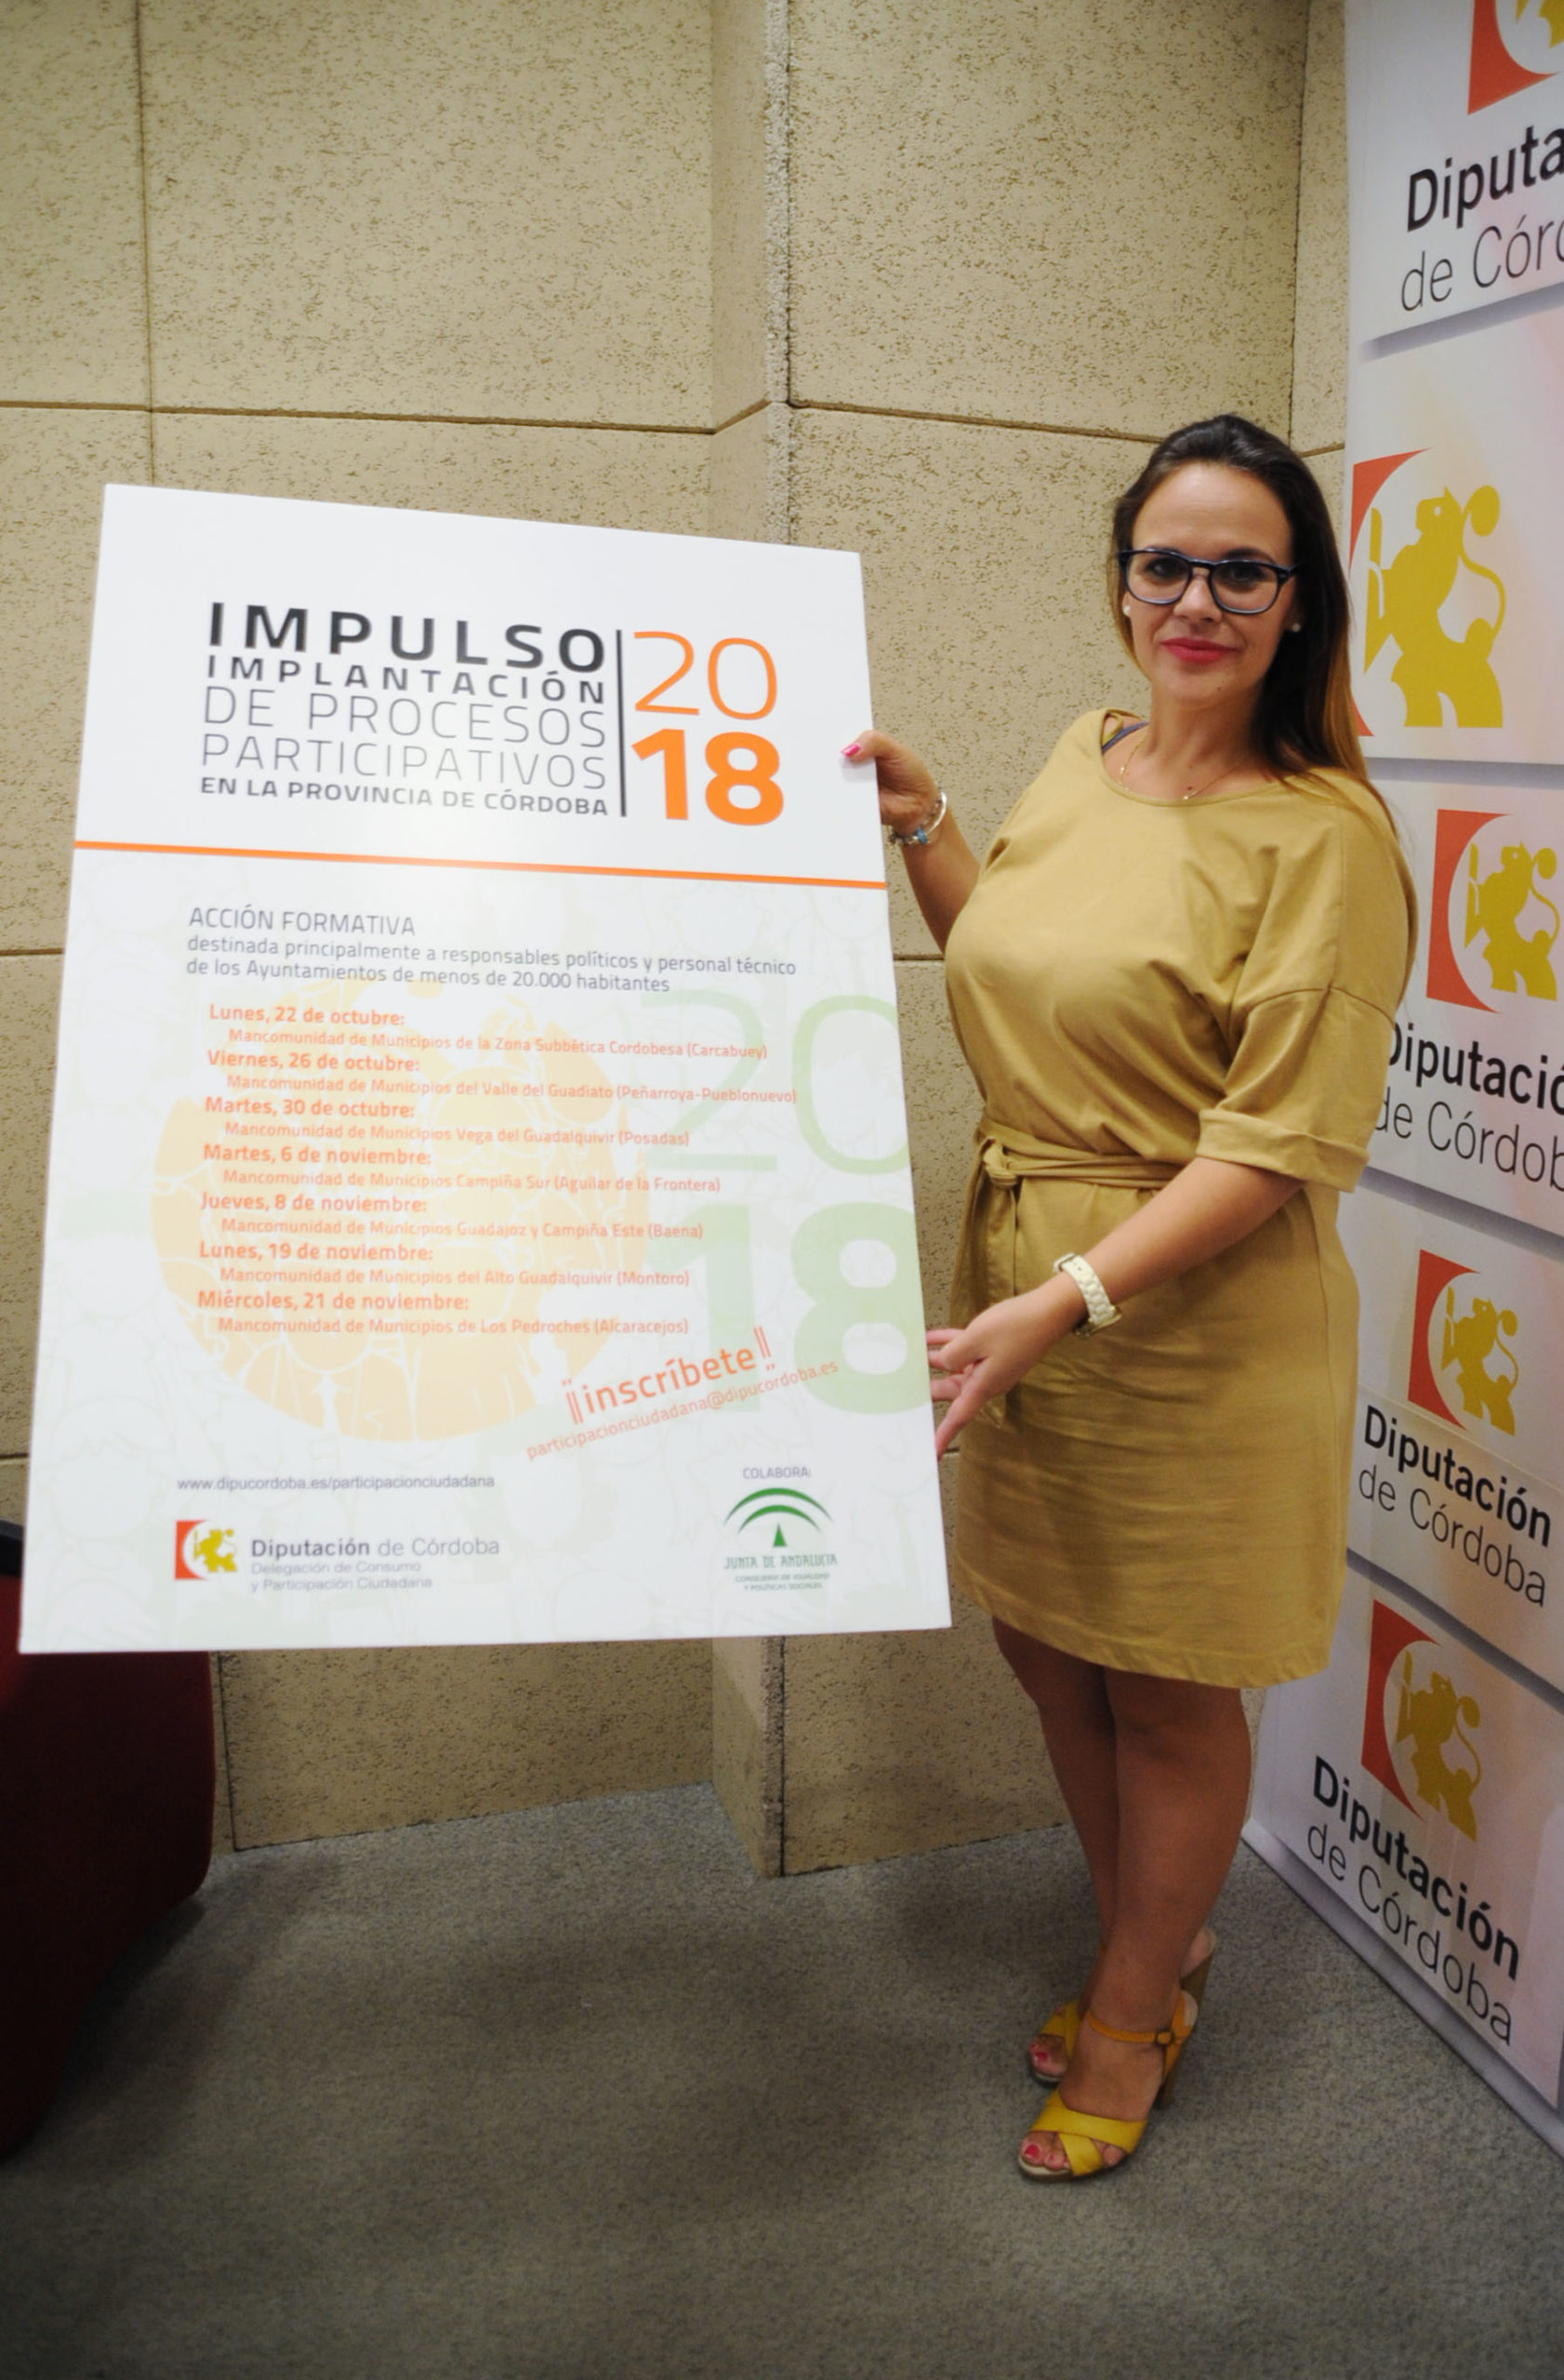 La Diputación pone en marcha un programa para impulsar la participación ciudadana en la provincia de Córdoba.